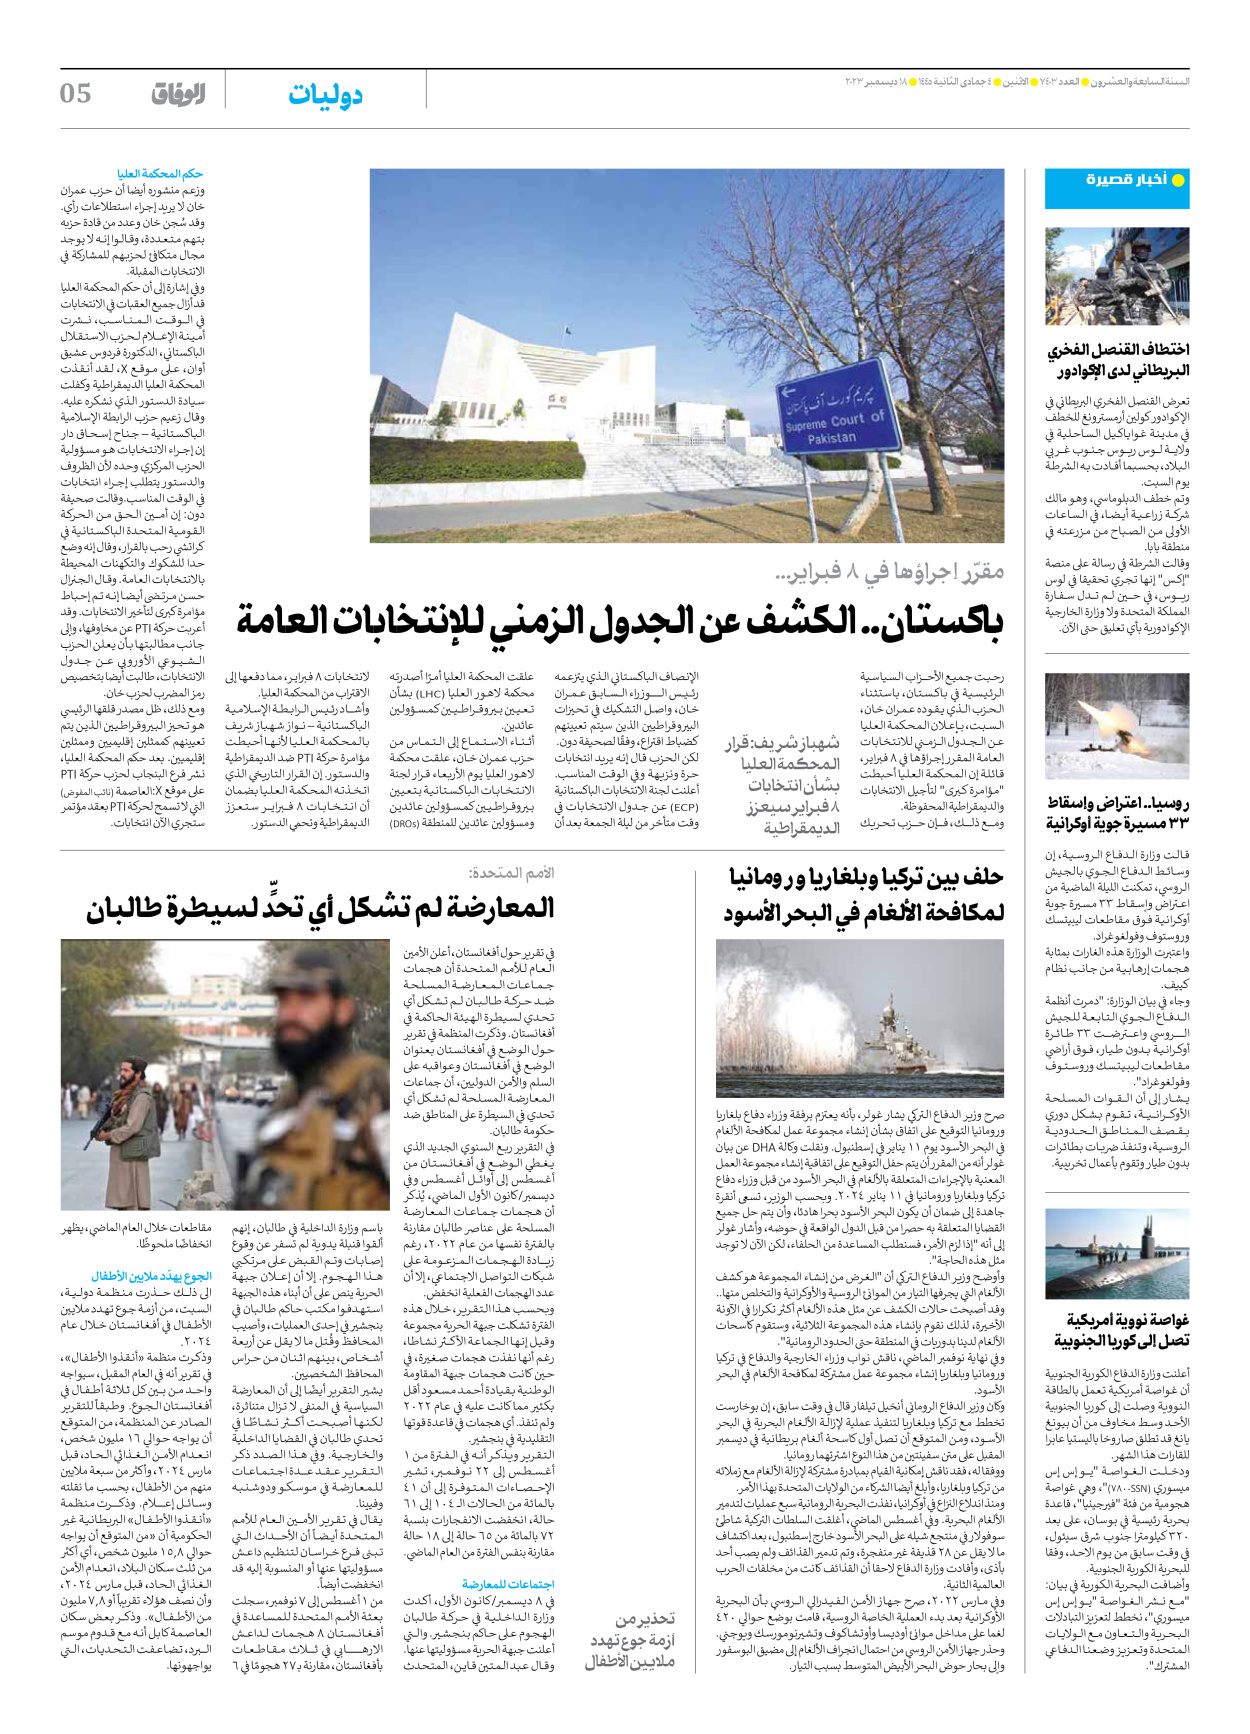 صحیفة ایران الدولیة الوفاق - العدد سبعة آلاف وأربعمائة وثلاثة - ١٨ ديسمبر ٢٠٢٣ - الصفحة ٥